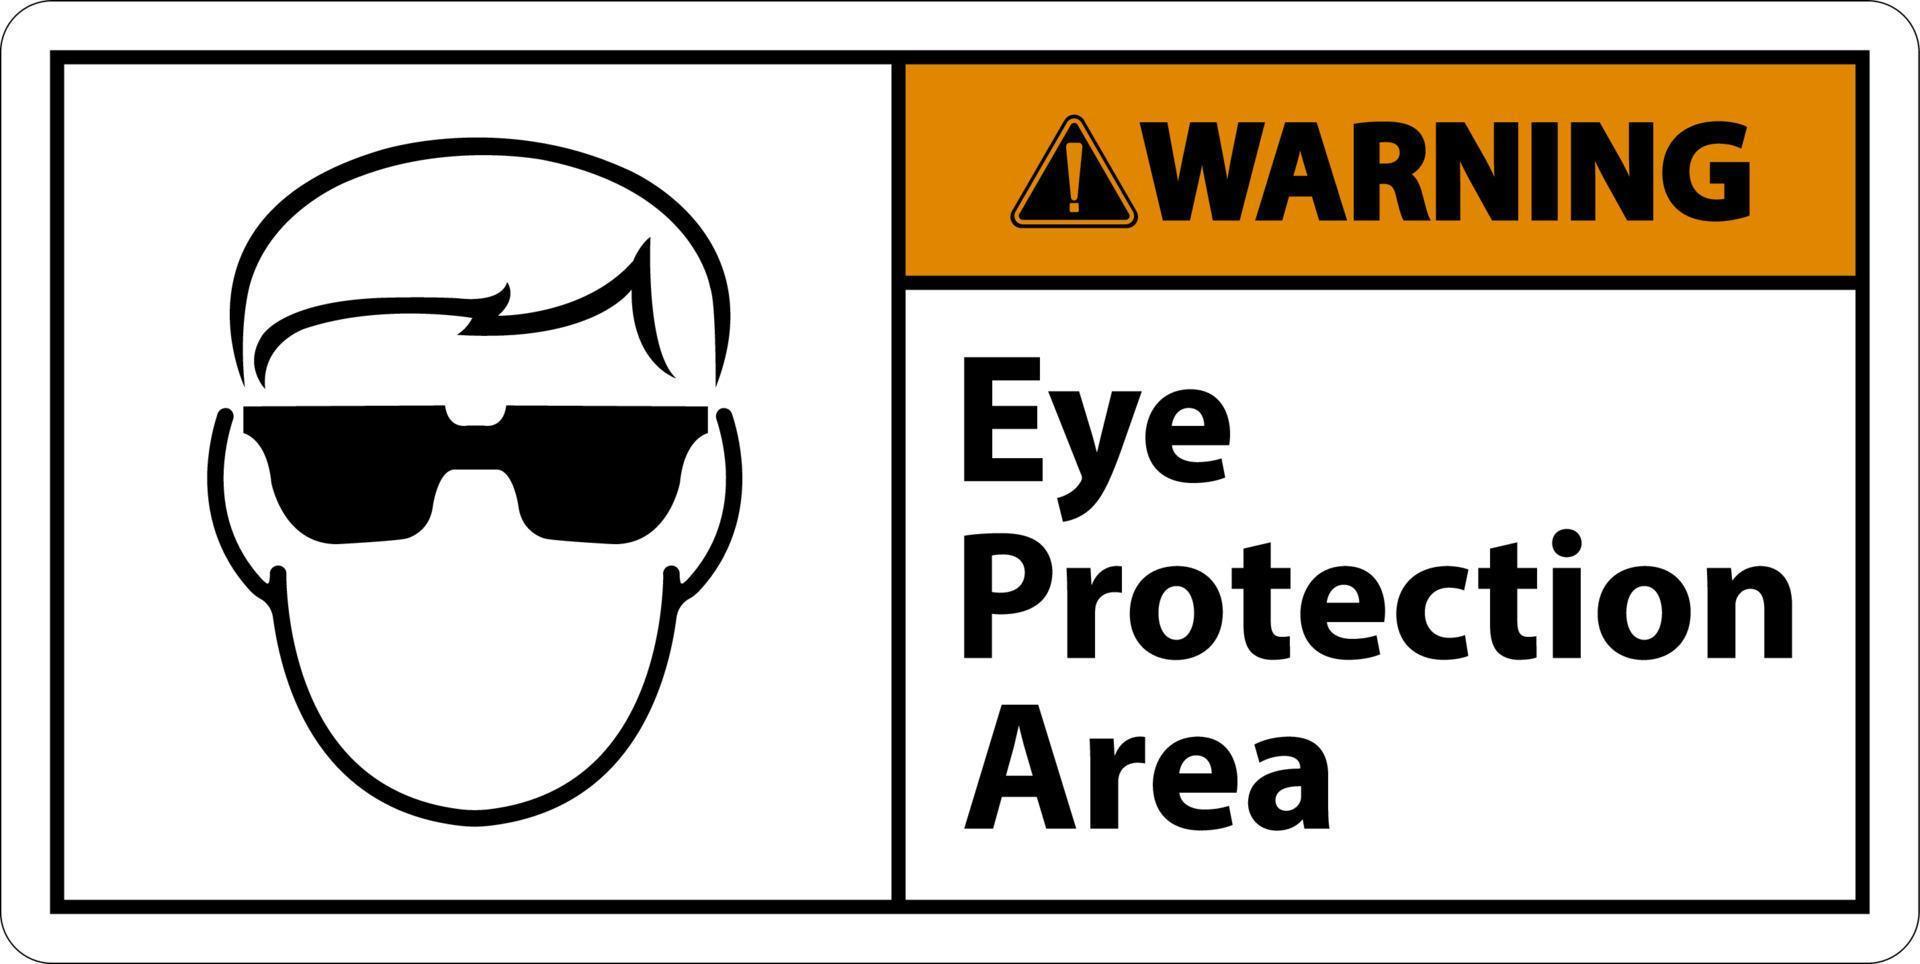 Atenção olho proteção área símbolo placa em branco fundo vetor